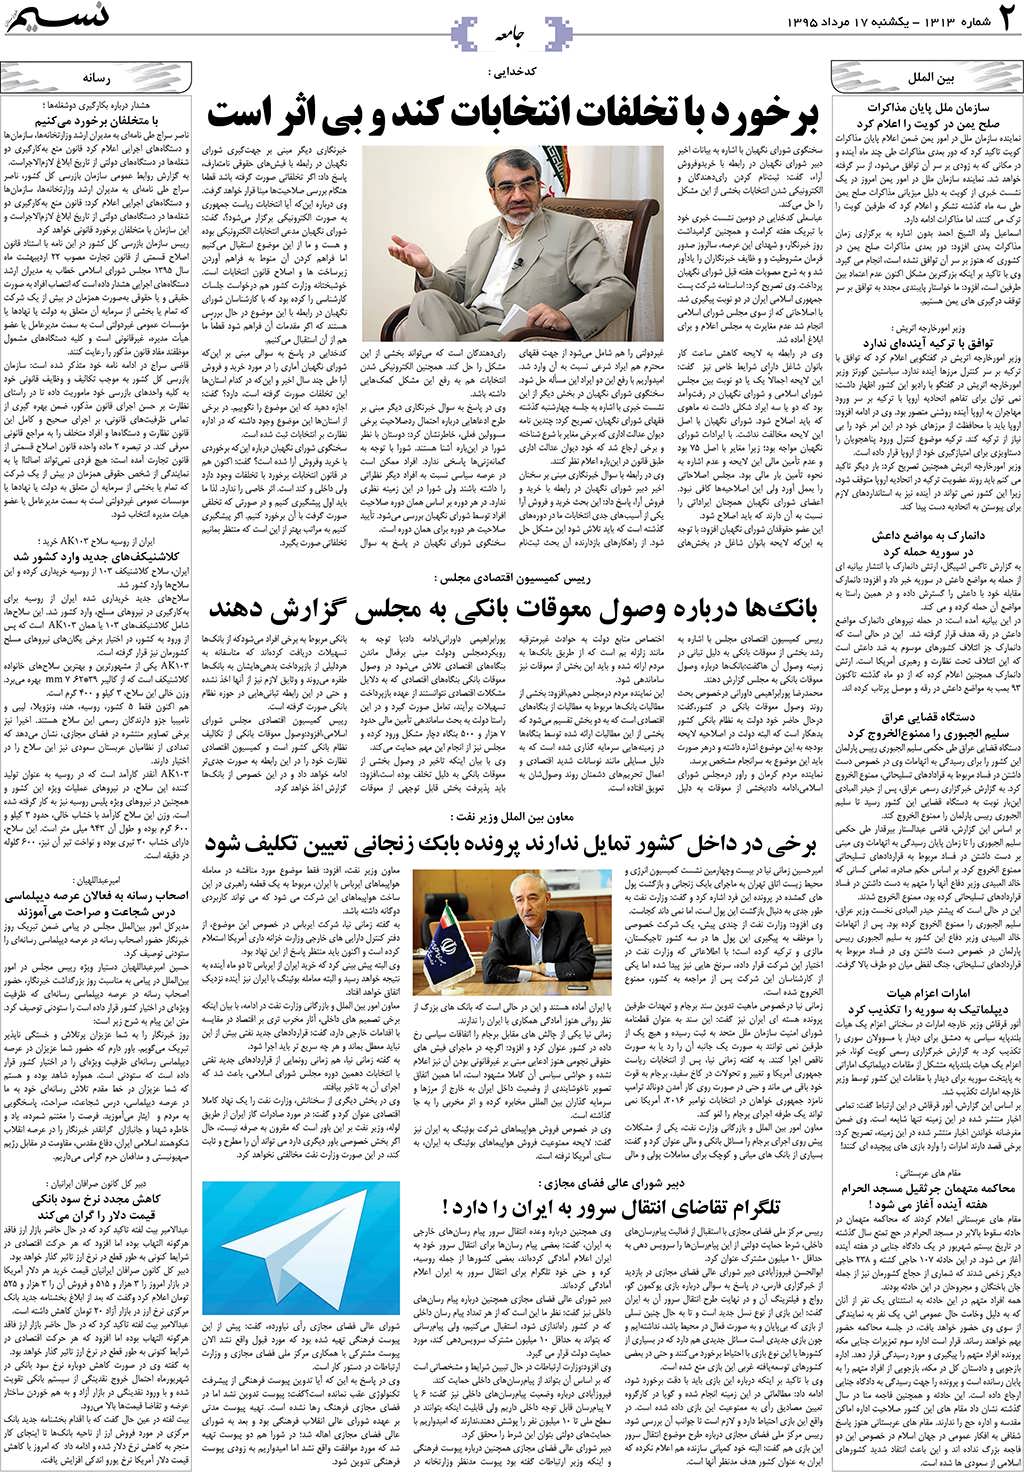 صفحه جامعه روزنامه نسیم شماره 1313